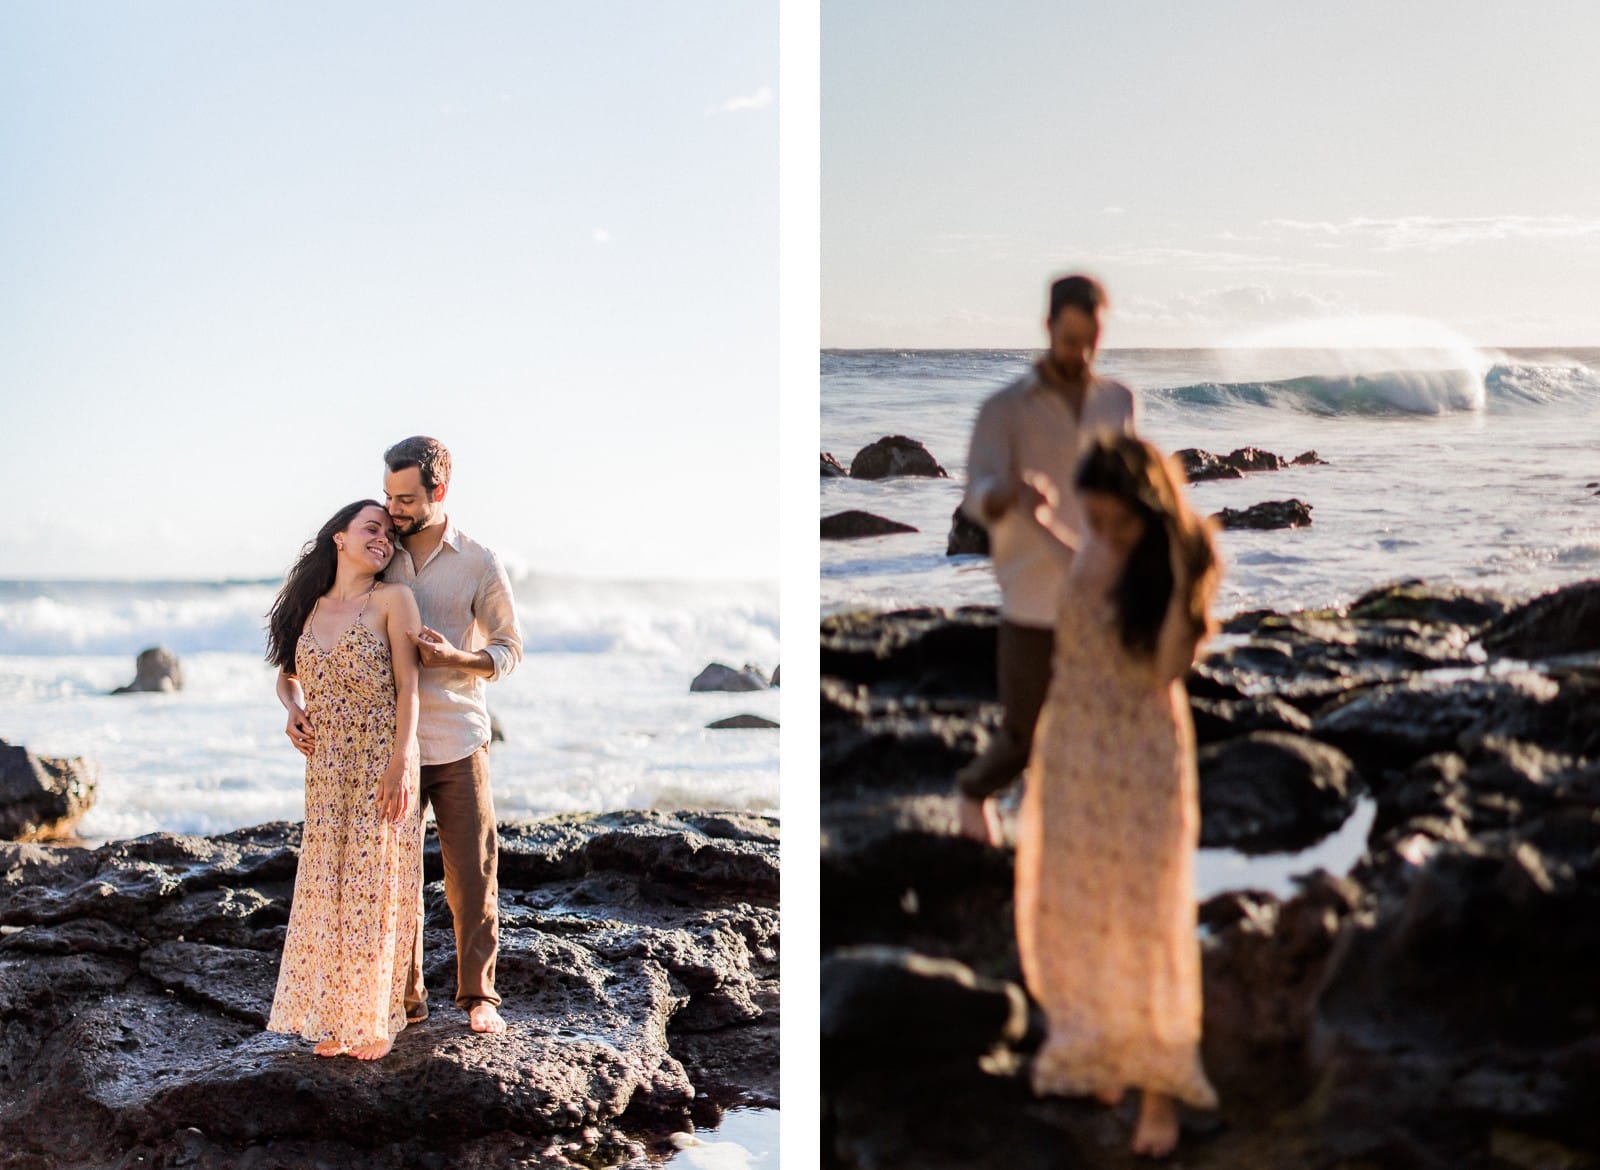 Photographie de Mathieu Dété, photographe de mariage et de couple à Saint-Paul sur l'île de la Réunion 974, présentant un couple en bord de mer de la plage de Grande Anse